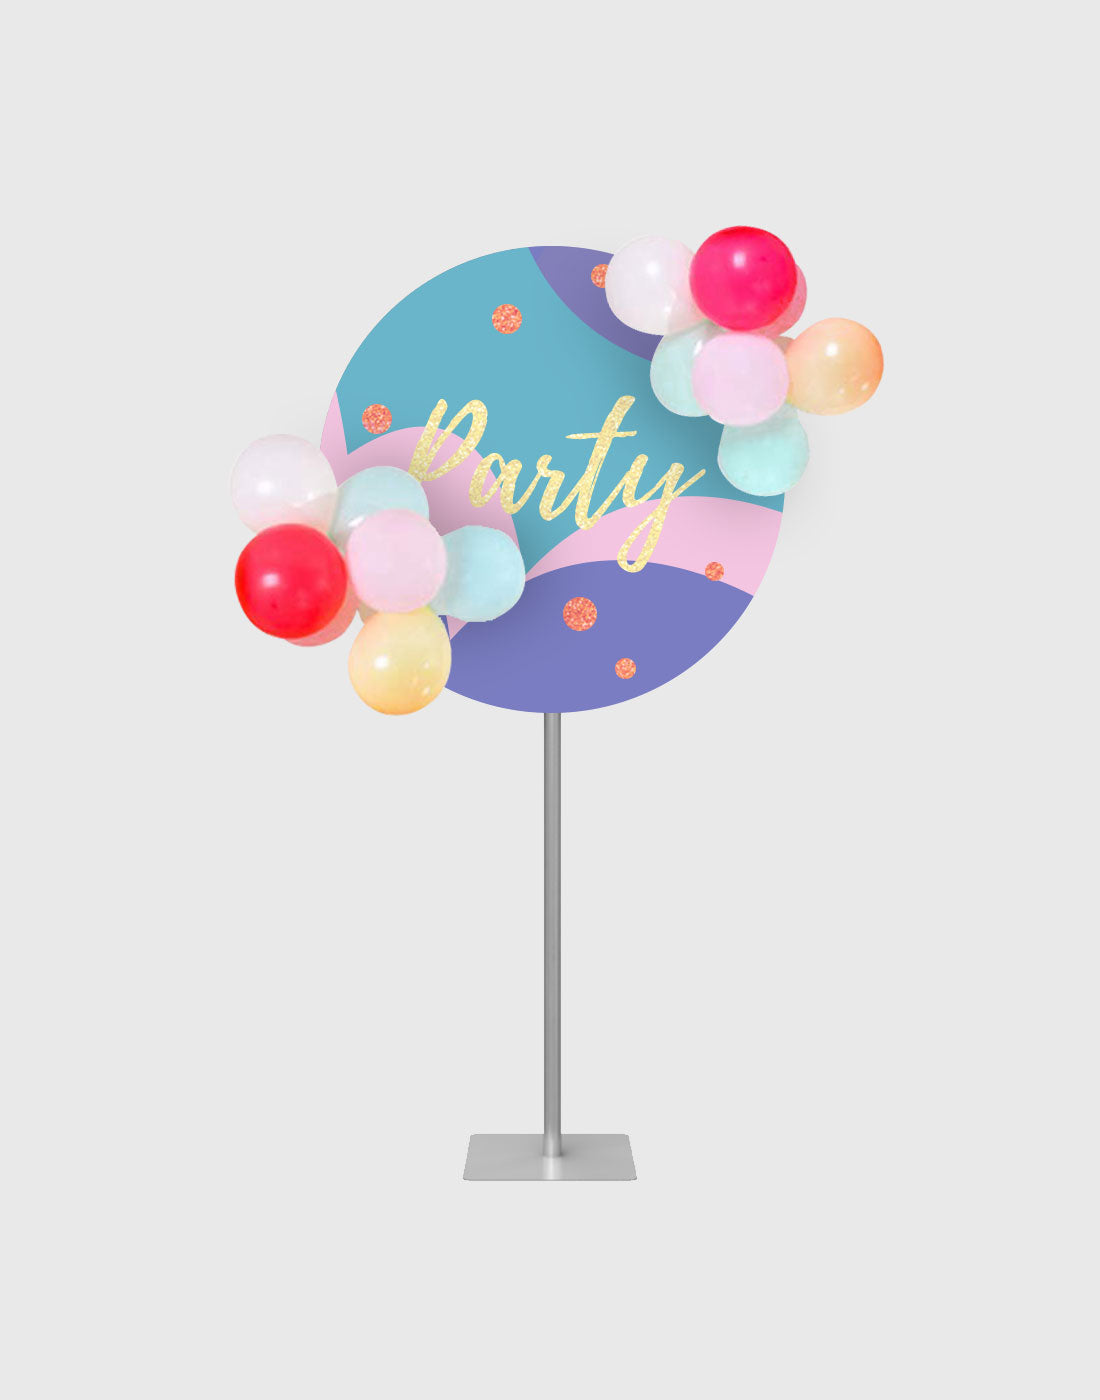 Aluminium-Ballonständer mit individuellen Drucken für Geburtstagsfeiern/Hochzeiten/Events